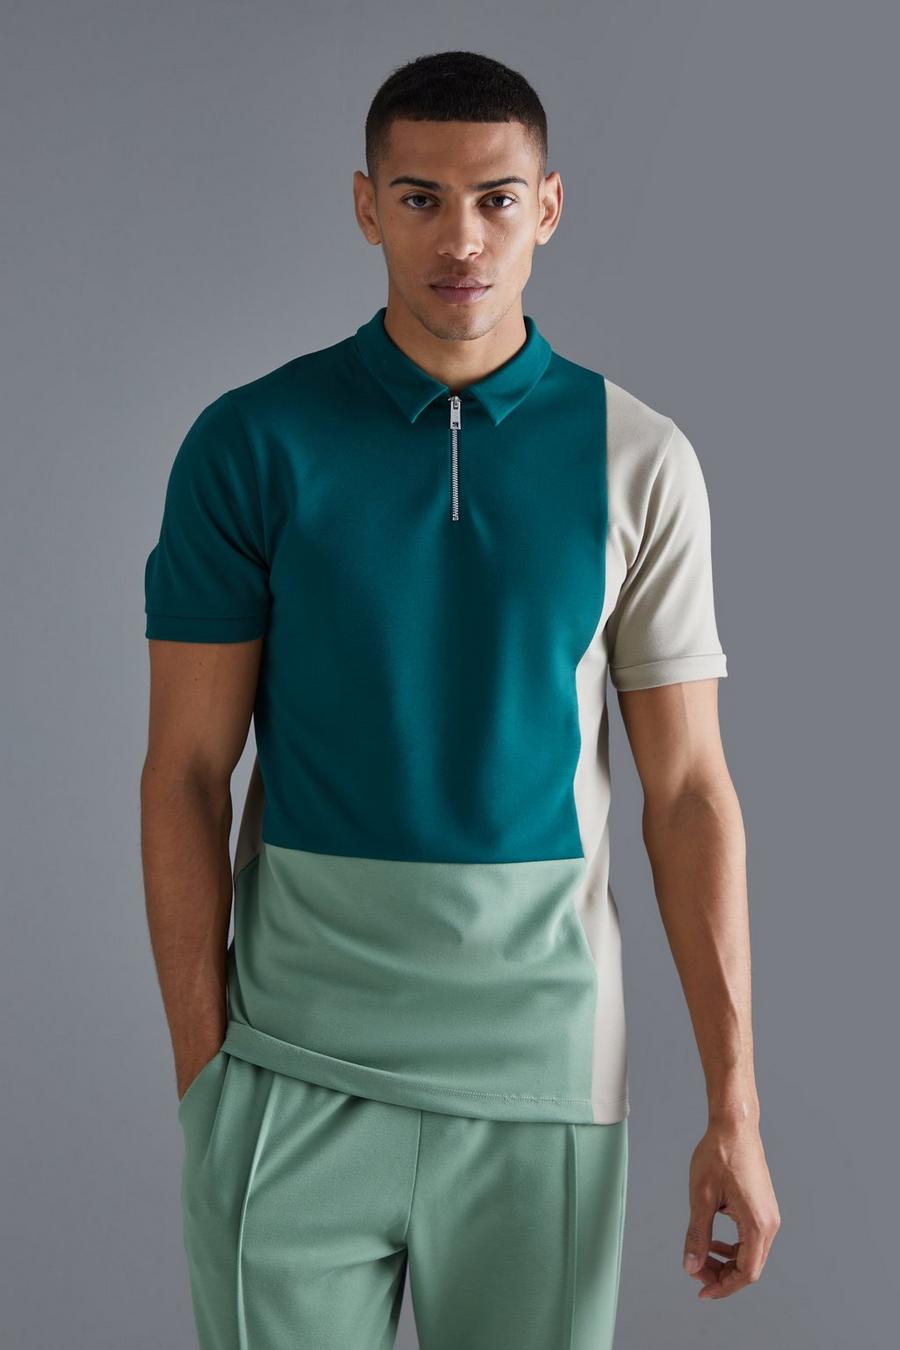 Kurzärmliges Slim-Fit Colorblock Poloshirt mit 1/4 Reißverschluss, Green